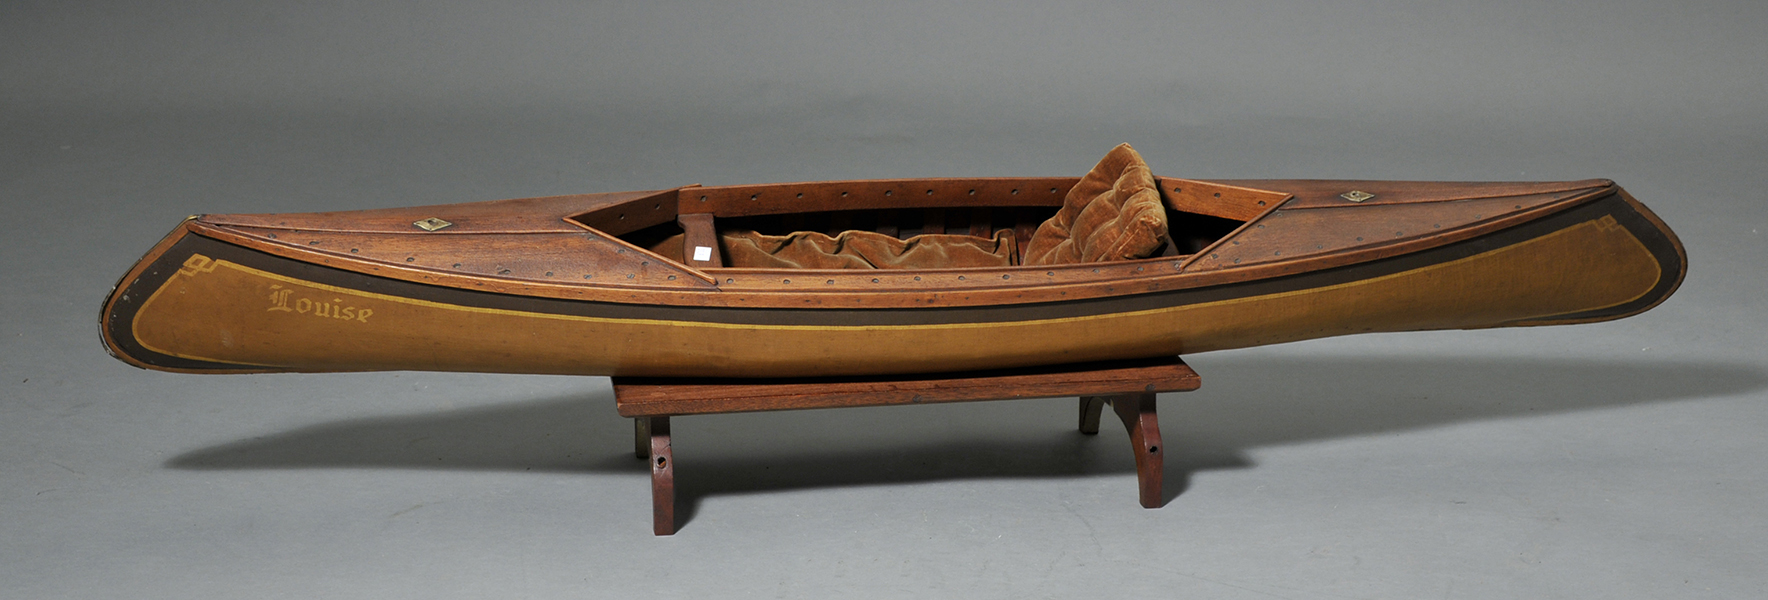 Well Made Canoe Model